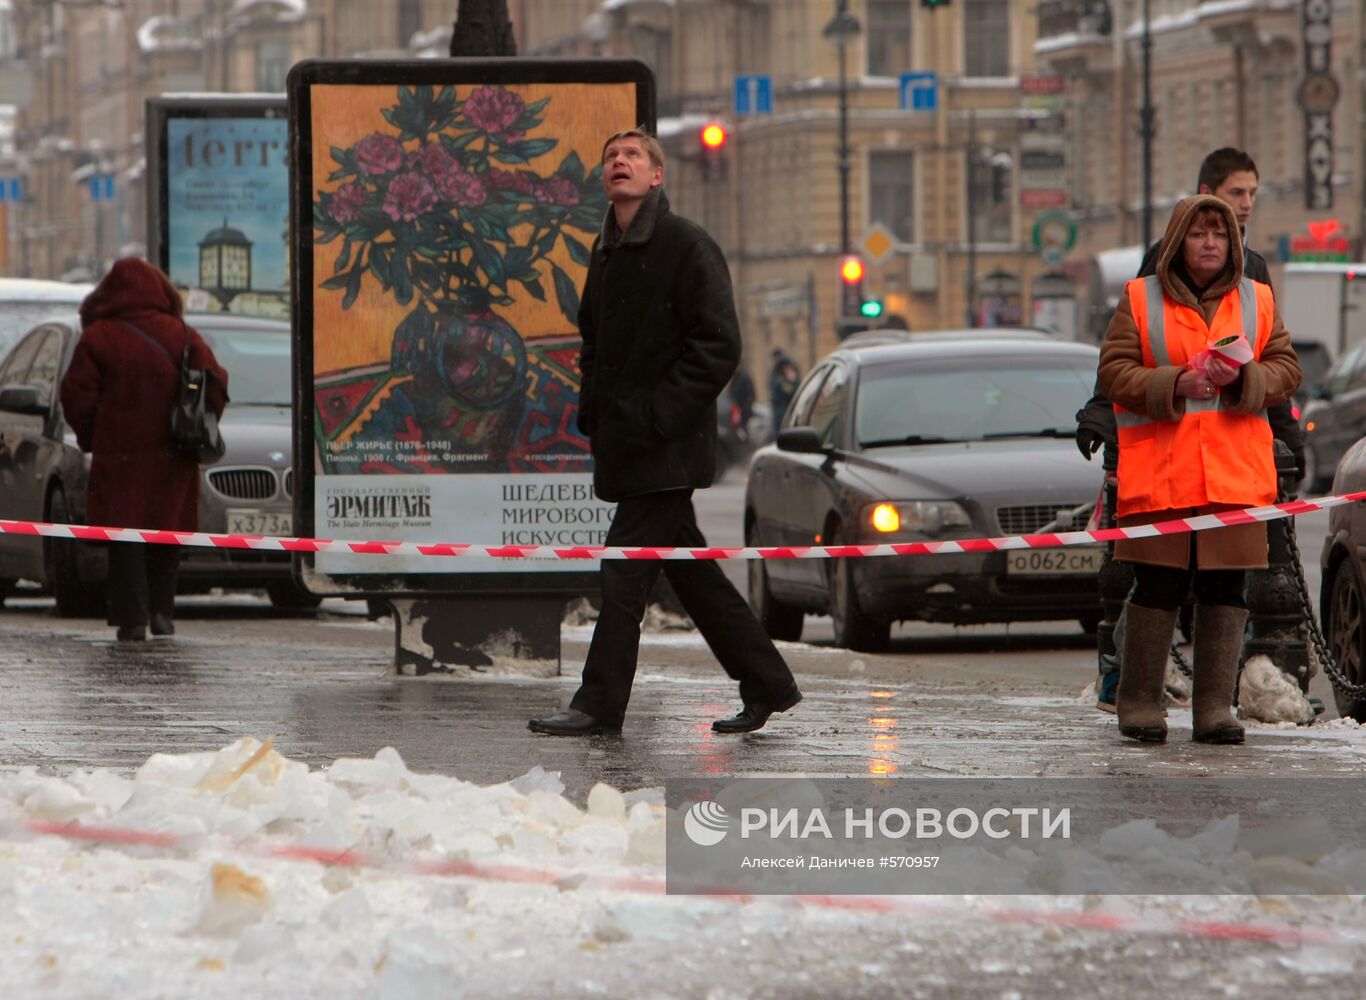 Очистка крыш зданий в Санкт-Петербурге от сосулек и снега